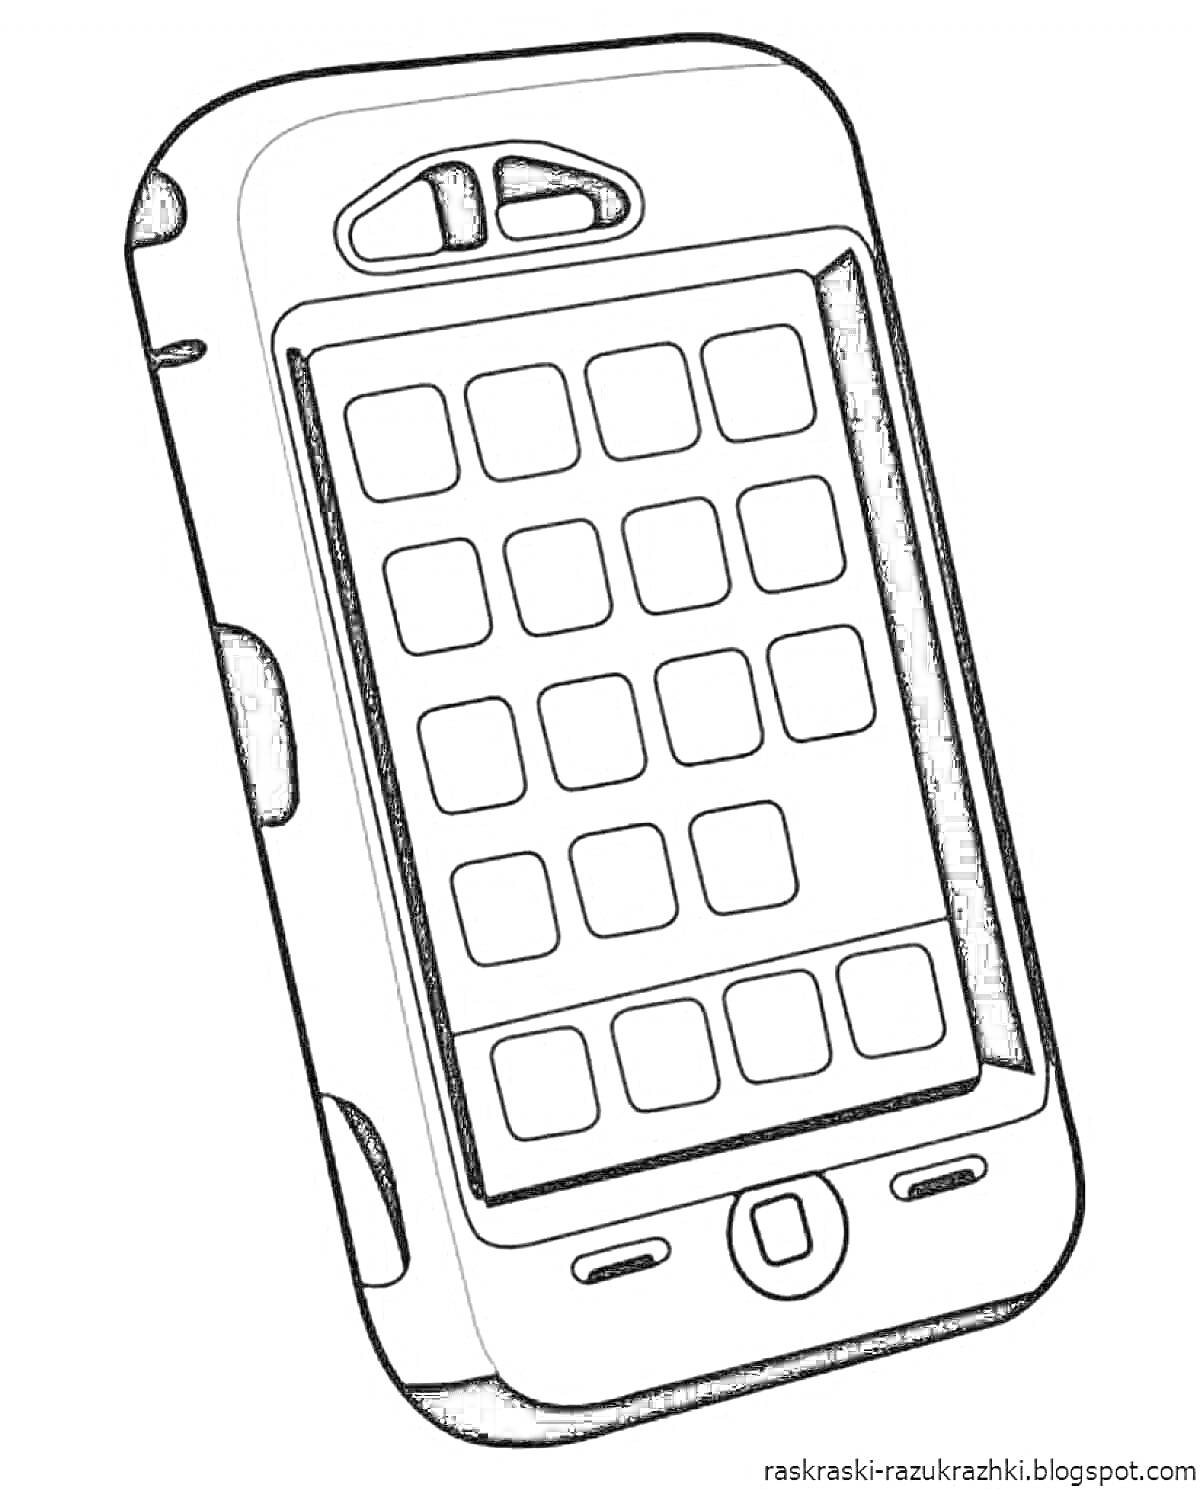 Раскраска телефон с экраном и кнопками